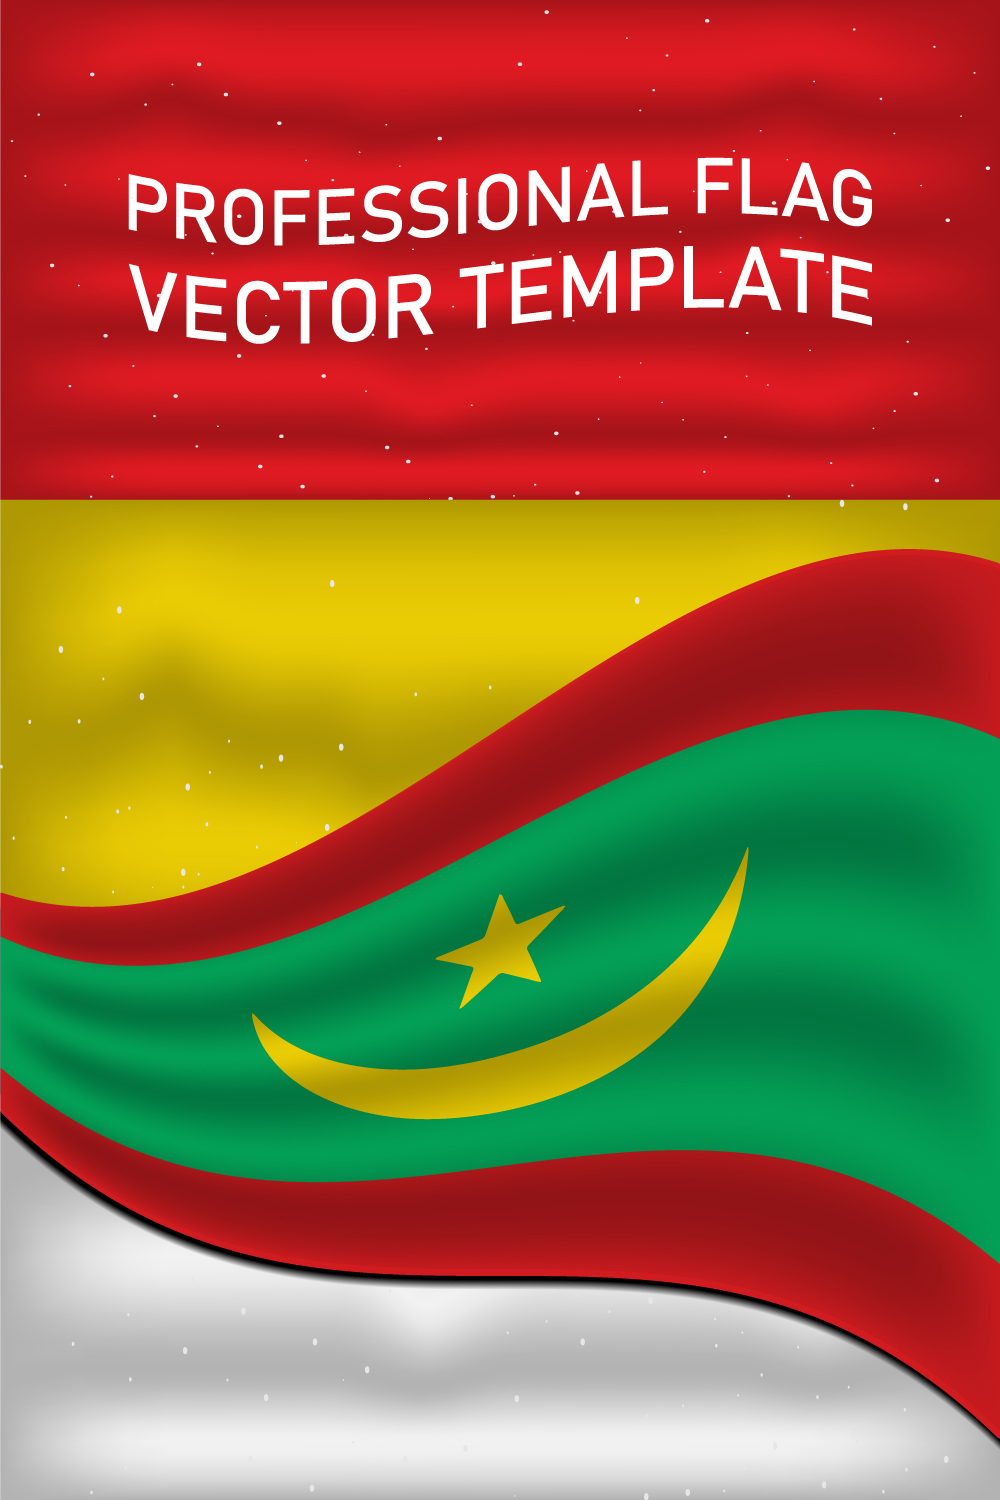 Colorful image of Mauritania flag.